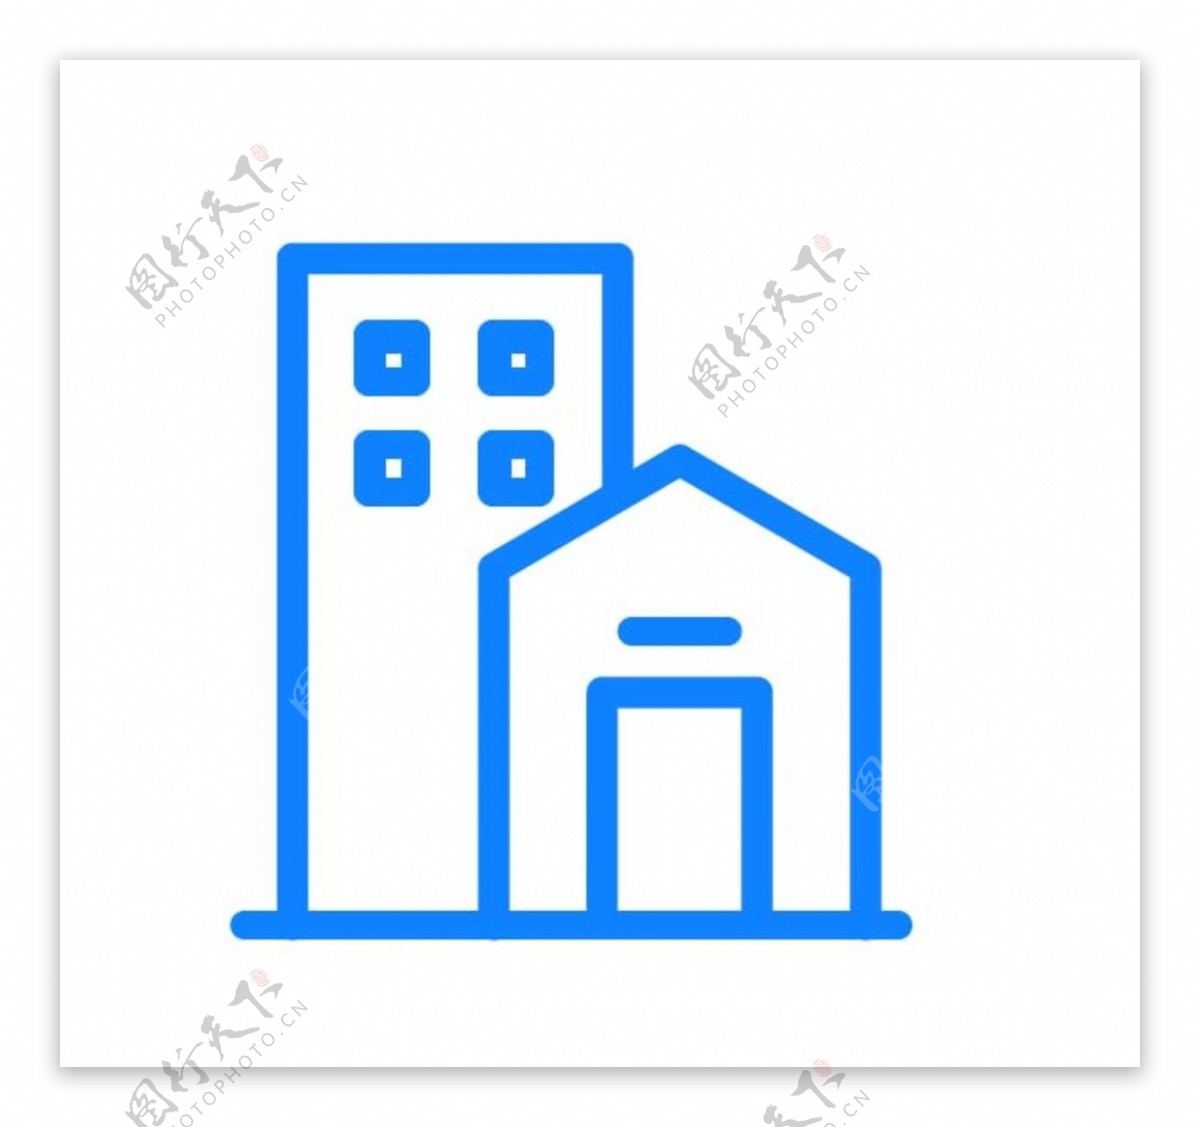 房屋建筑图标